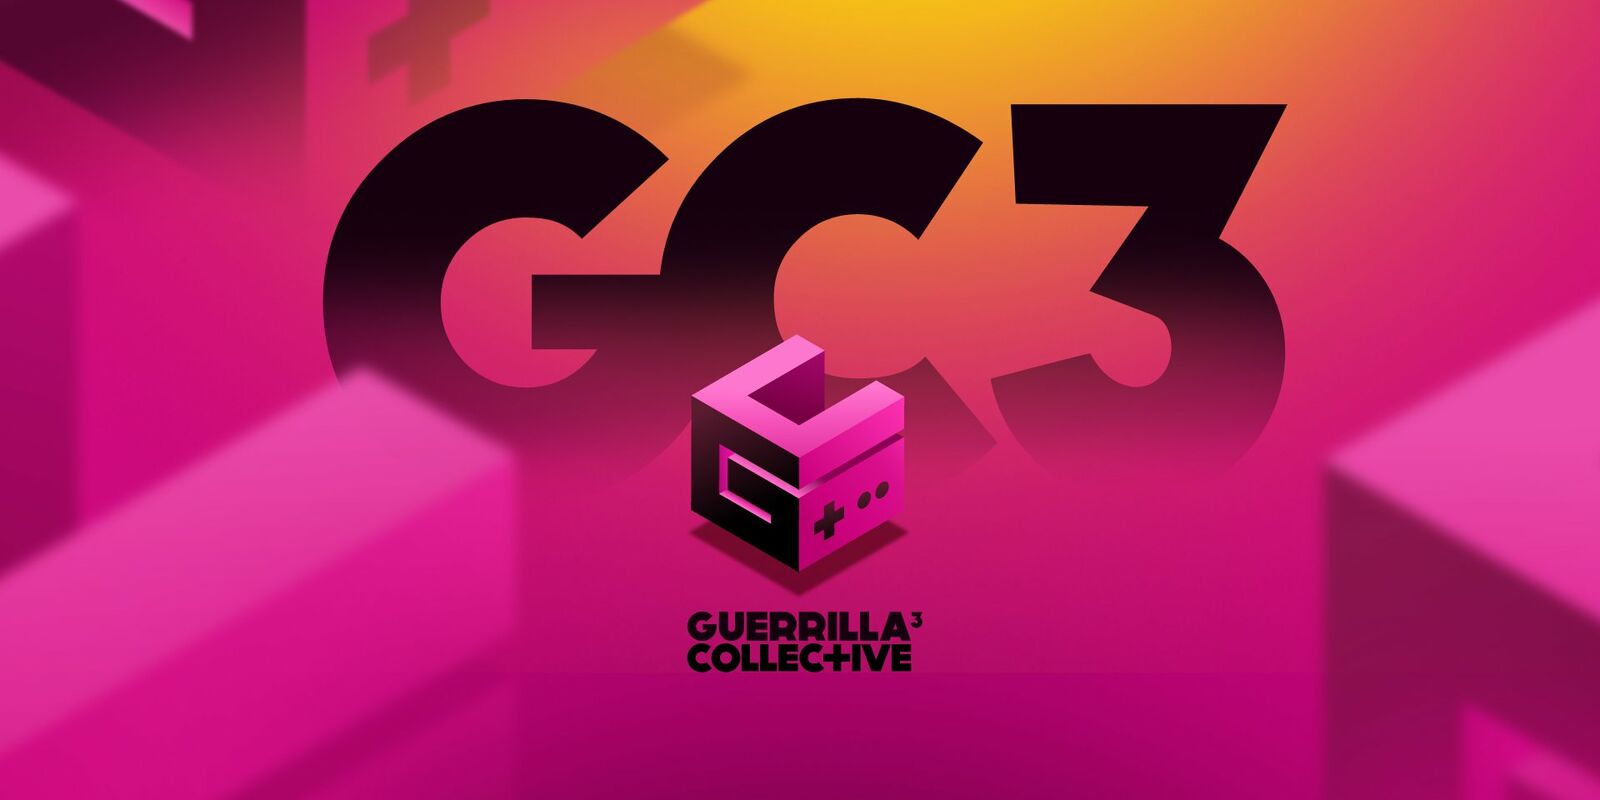 Guerrilla collective stream 2022 9